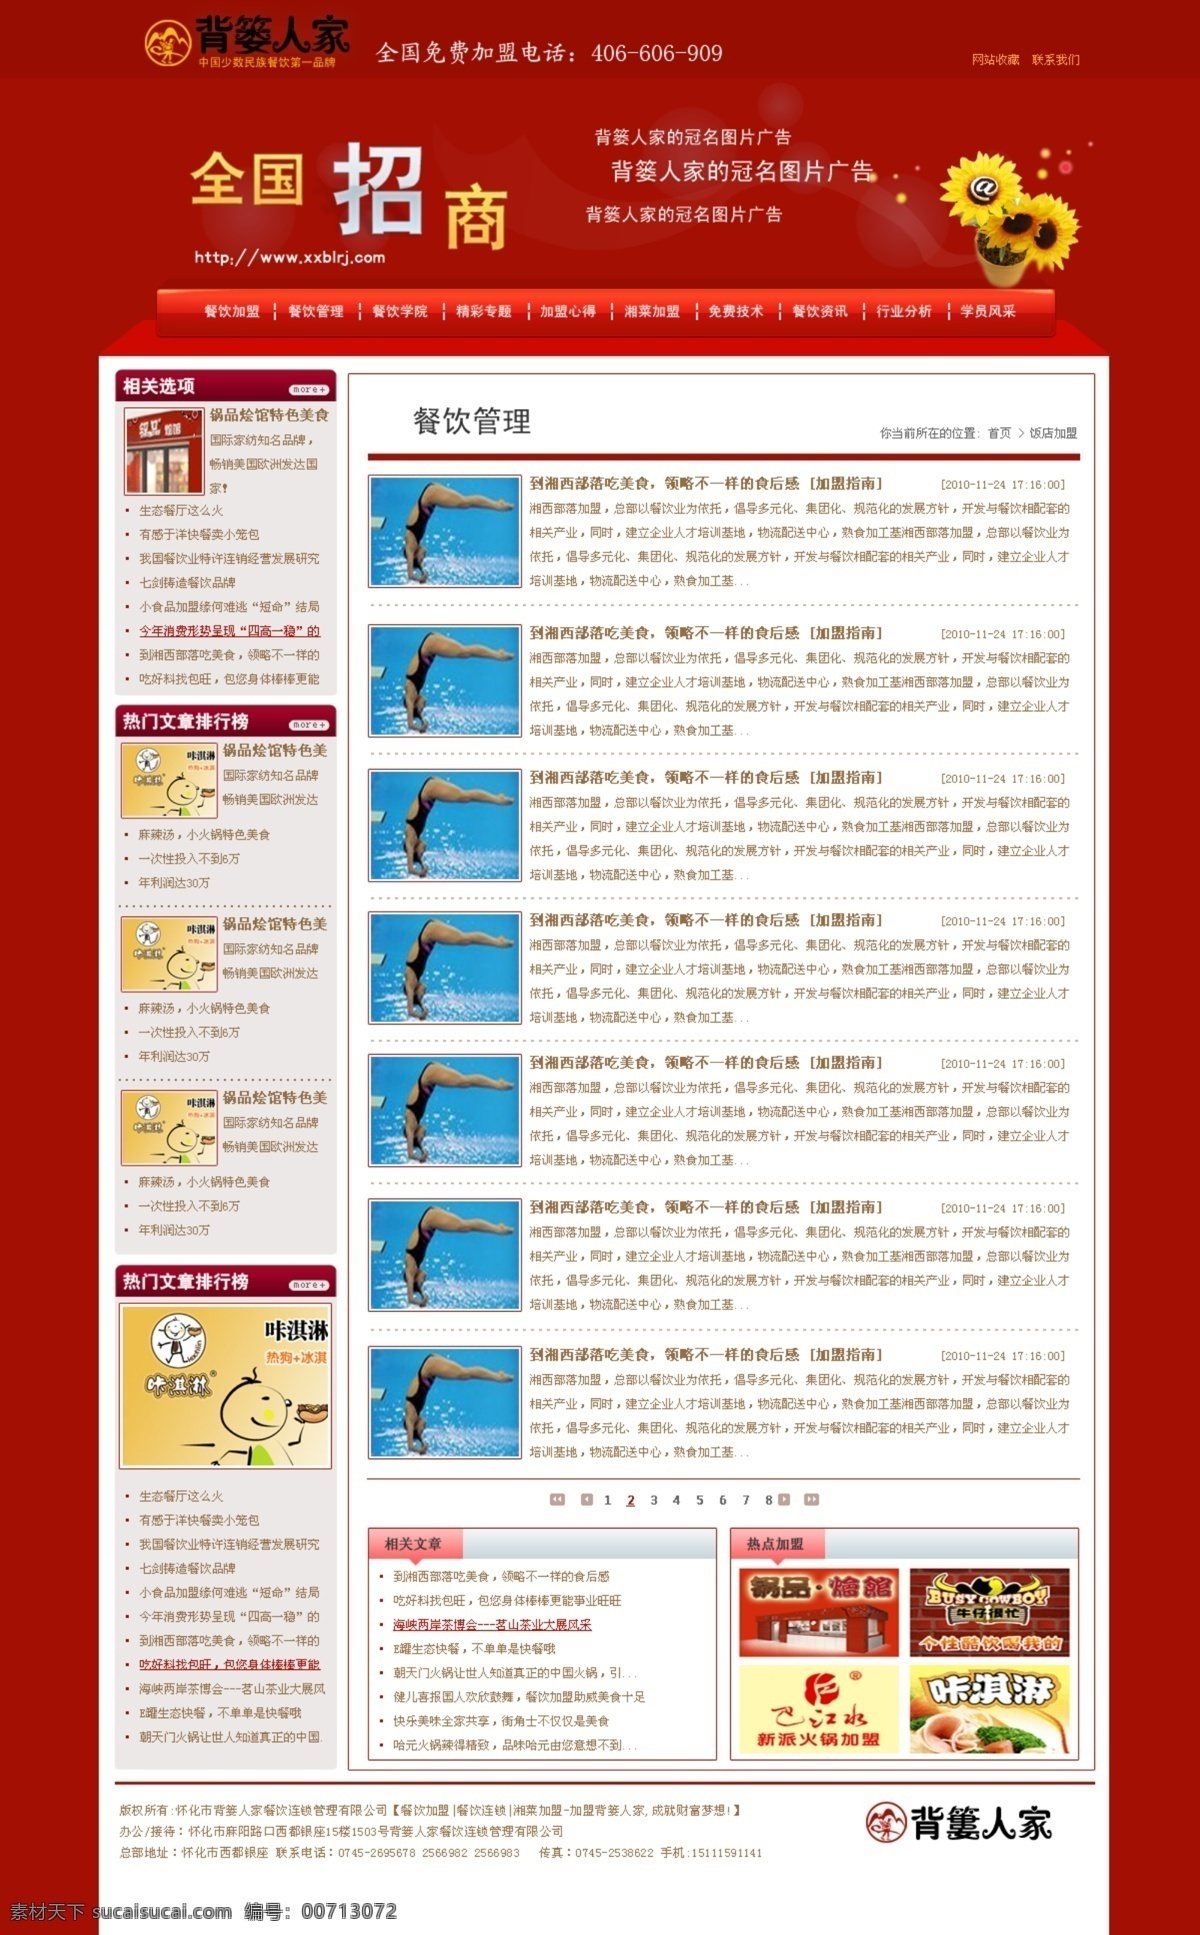 餐饮 管理 红色 加盟 立体导航 模版 内页 网页 招商 网站 模板下载 中文模版 网页模板 源文件 海报 其他海报设计